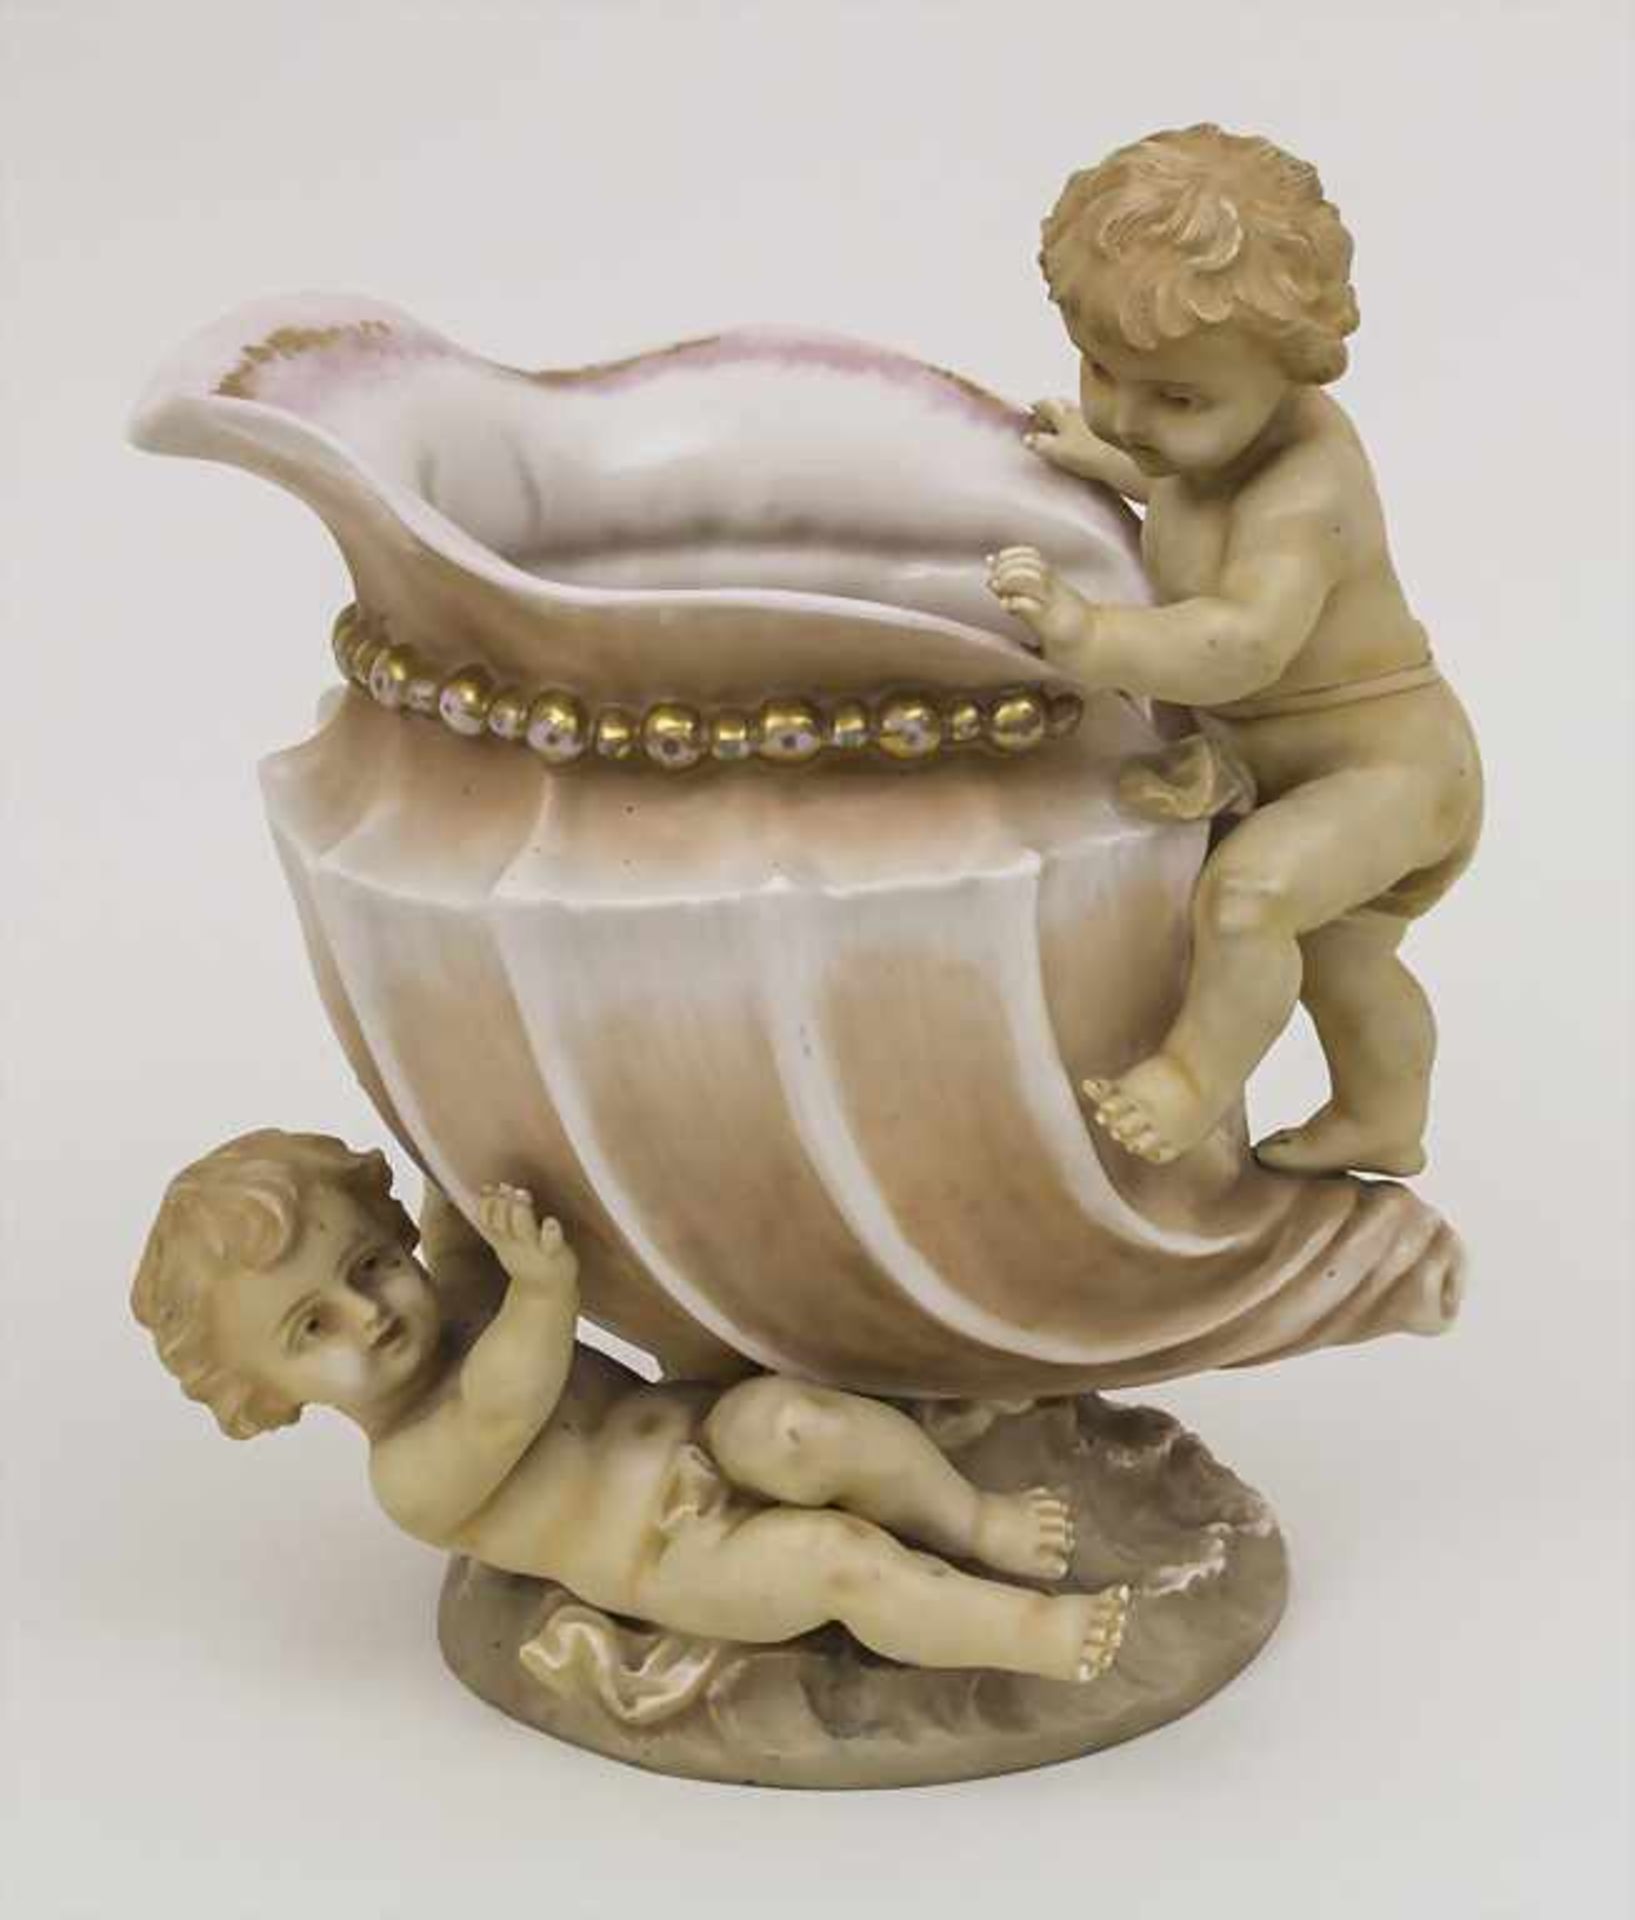 Zierkanne mit Putten / A decorative jug with putti, L. Strauss & Sons, Rudolstadt, um 1900 Material: